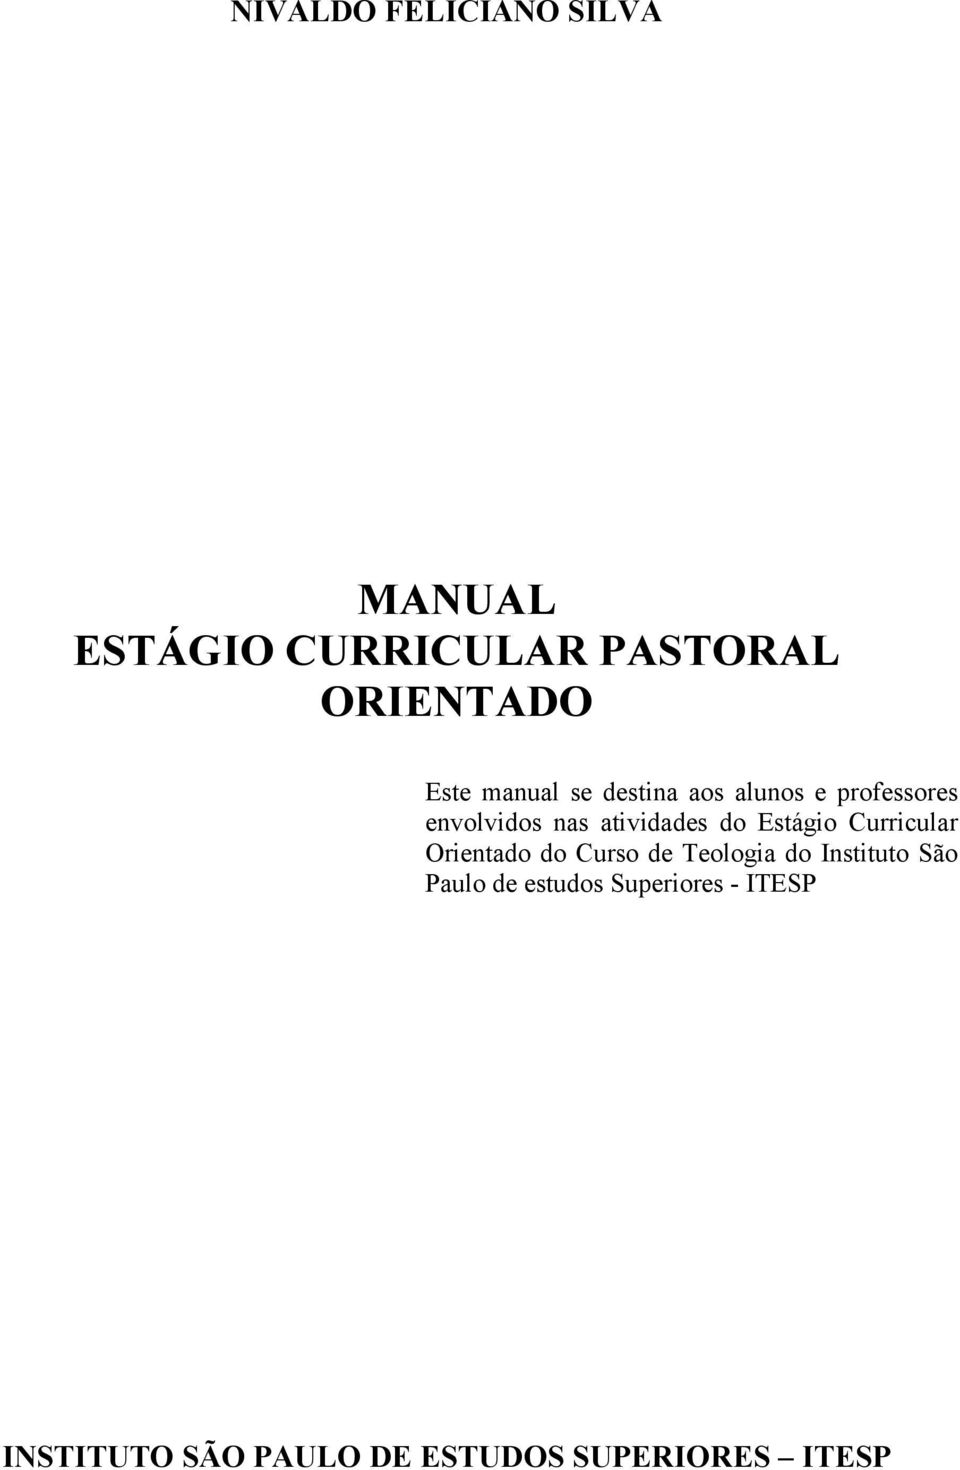 Estágio Curricular Orientado do Curso de Teologia do Instituto São Paulo